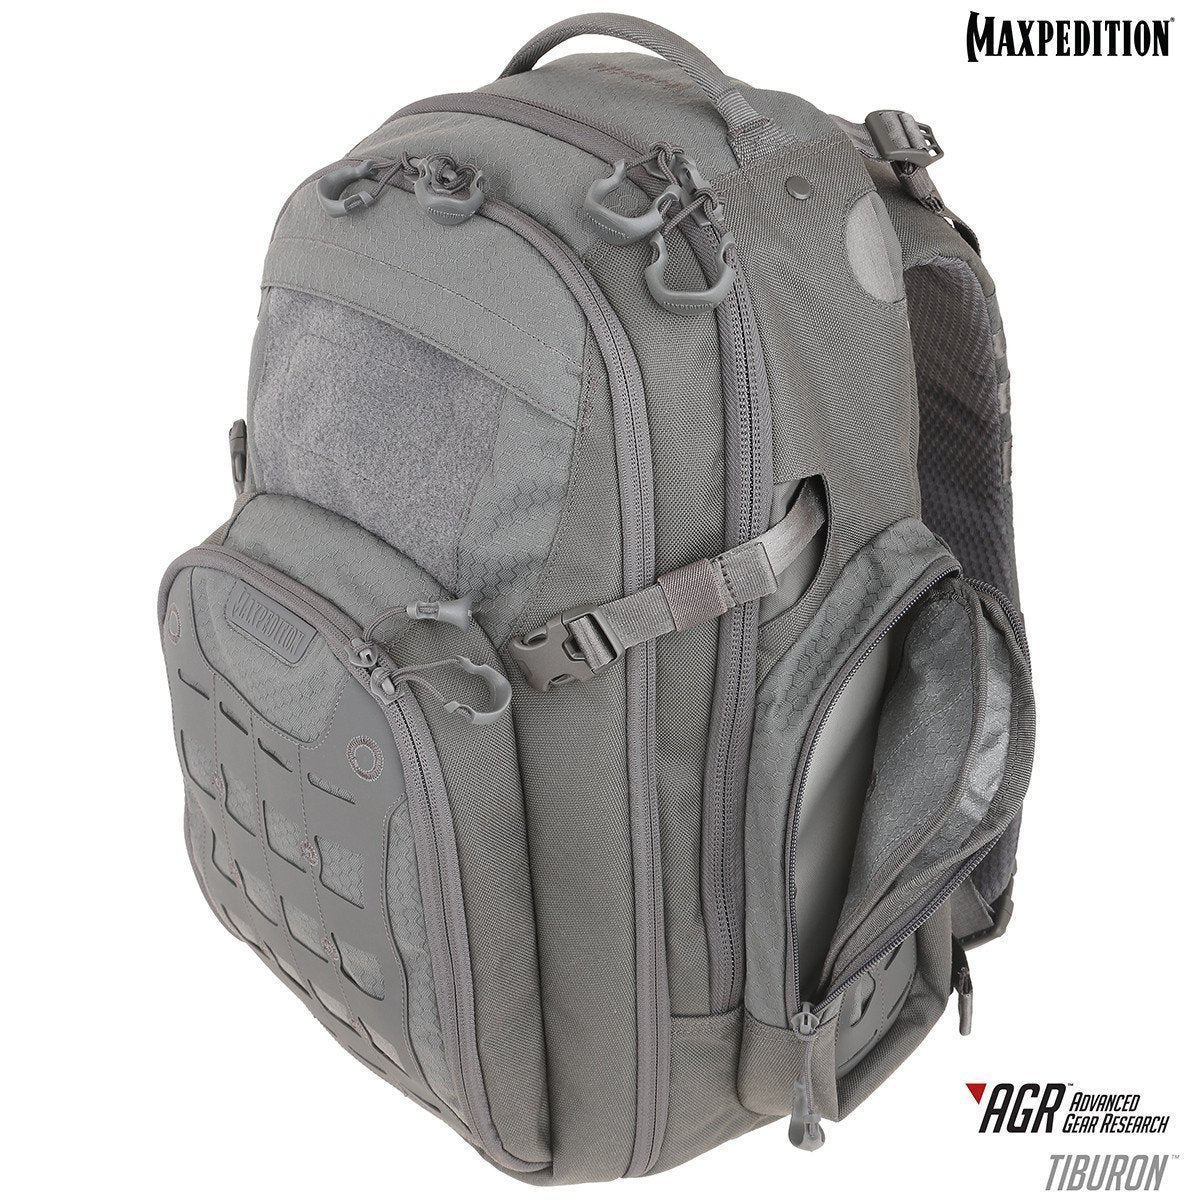 Maxpedition Tiburon Backpack 34L Backpacks Maxpedition Tactical Gear Supplier Tactical Distributors Australia